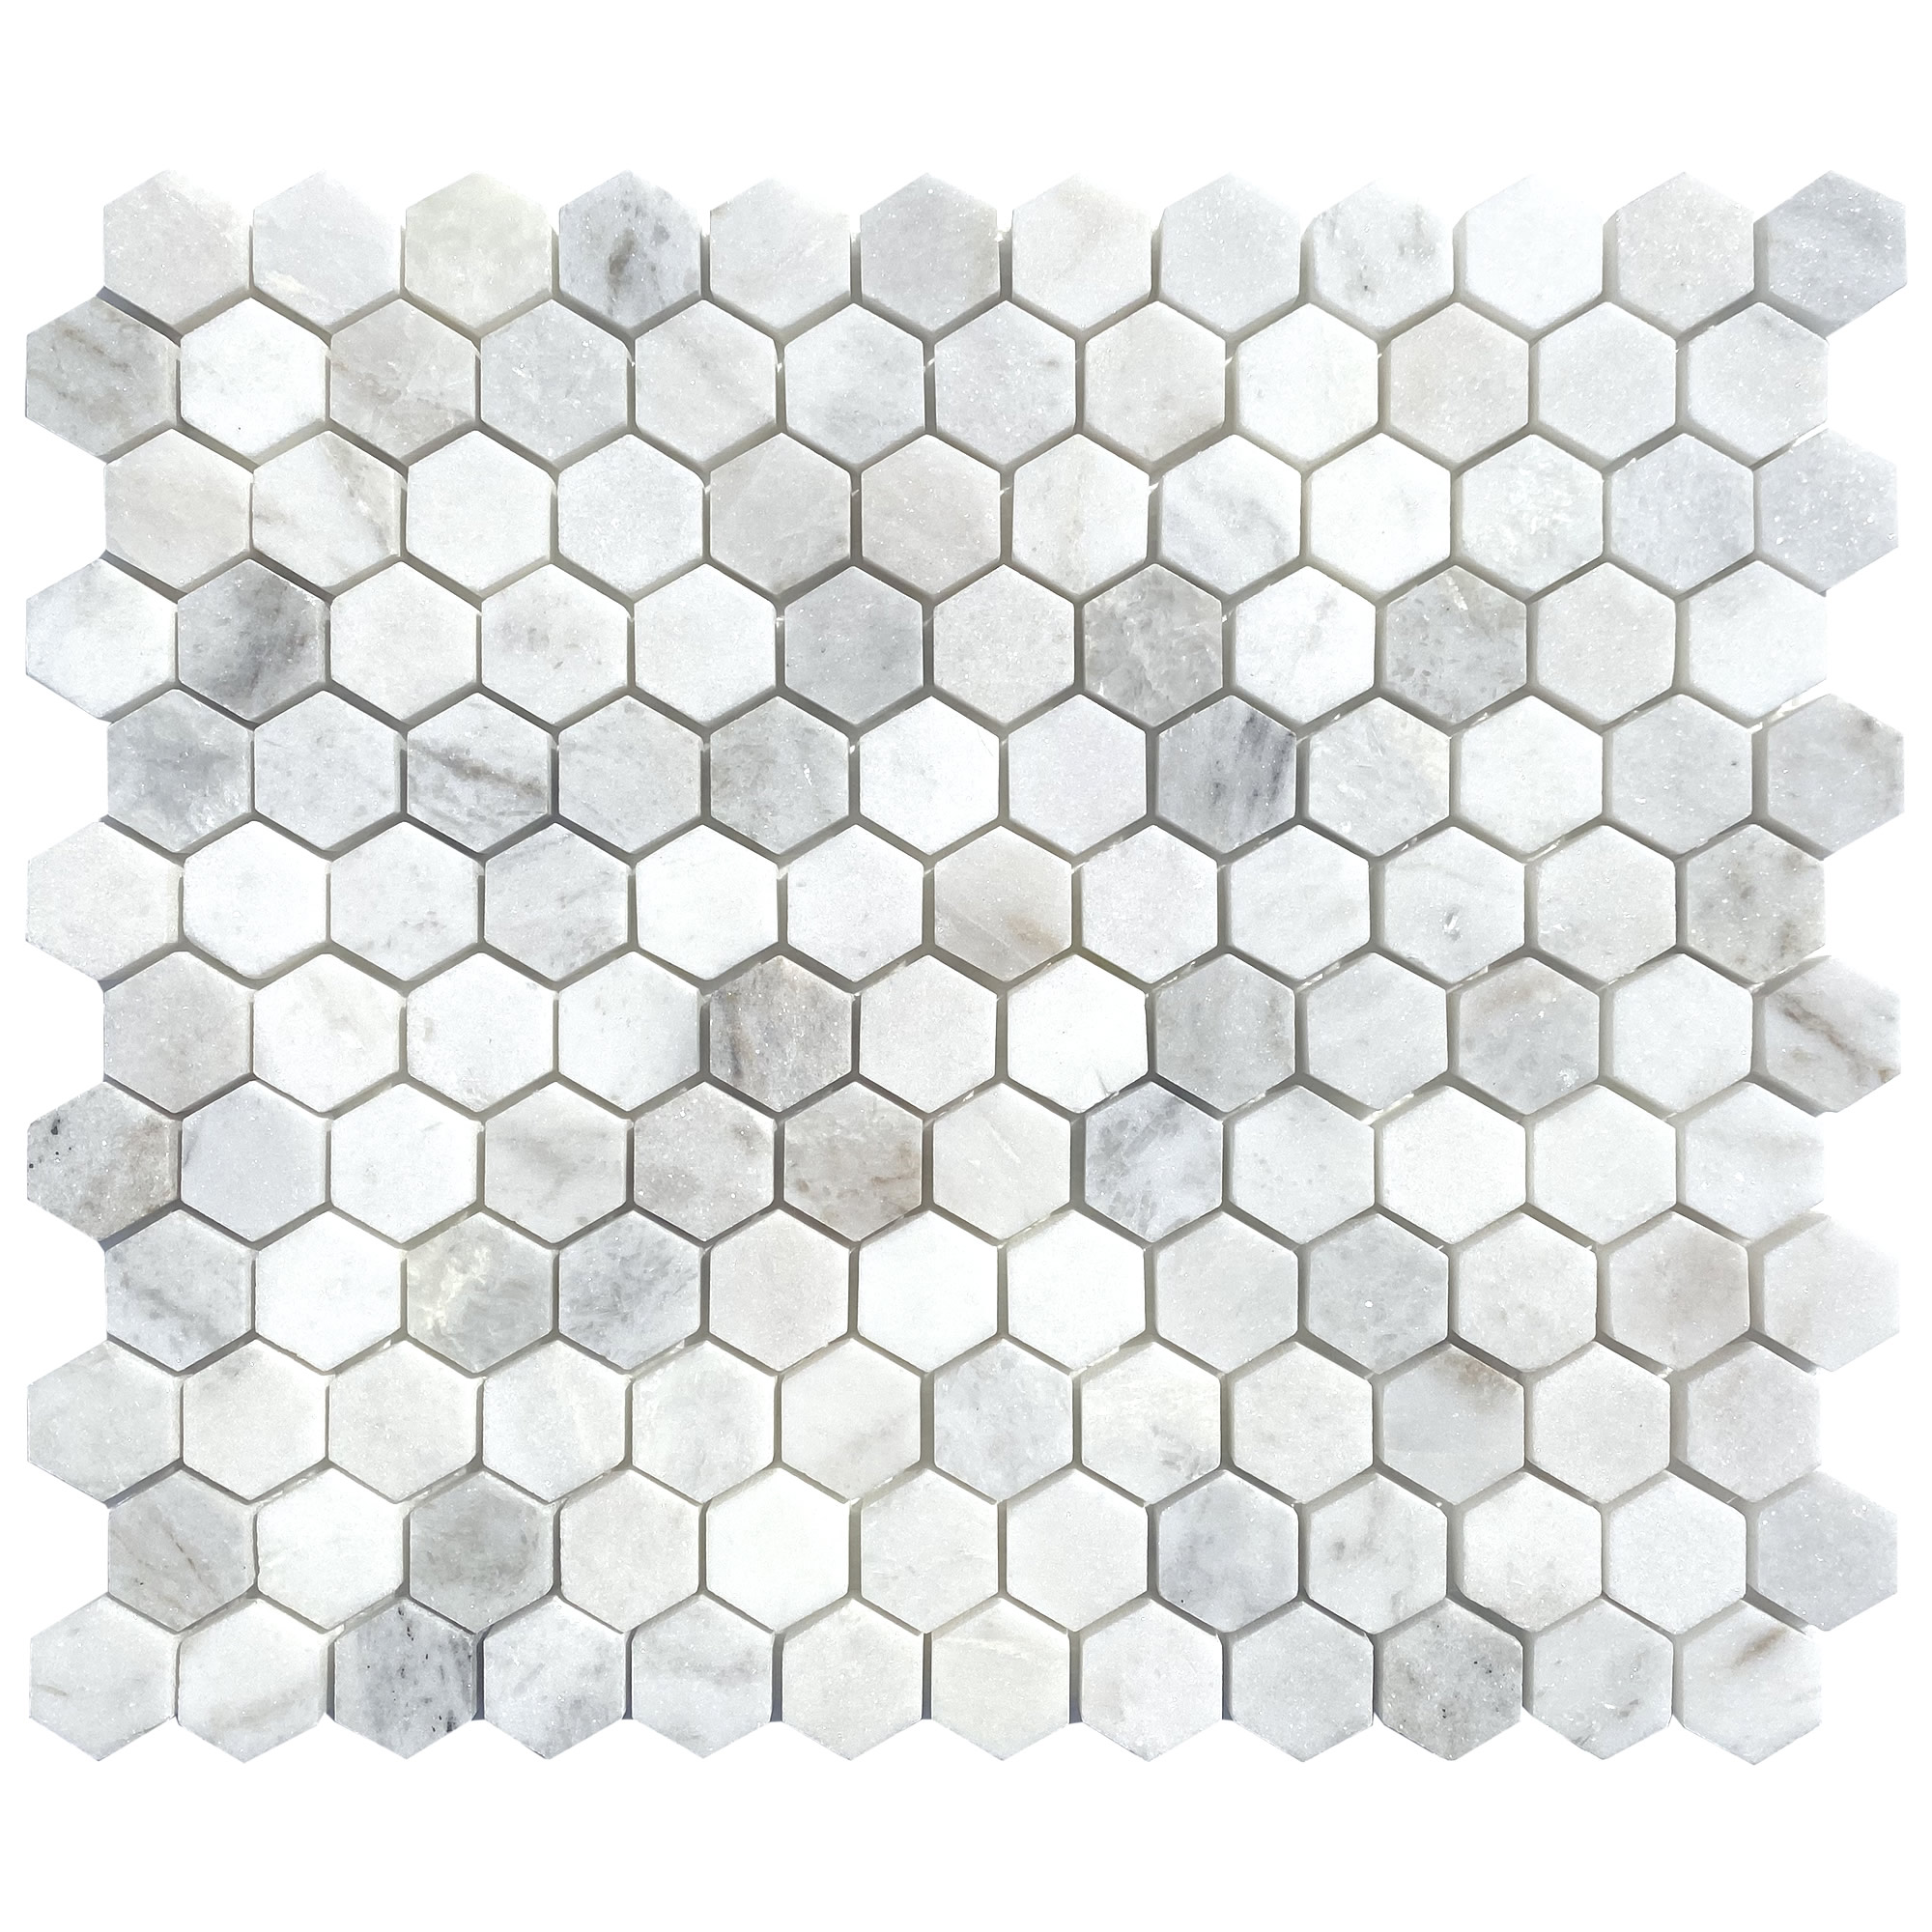 Barreta Hexagonal – Pata de Cabra 3/4(19mm)) x 24(610 mm)